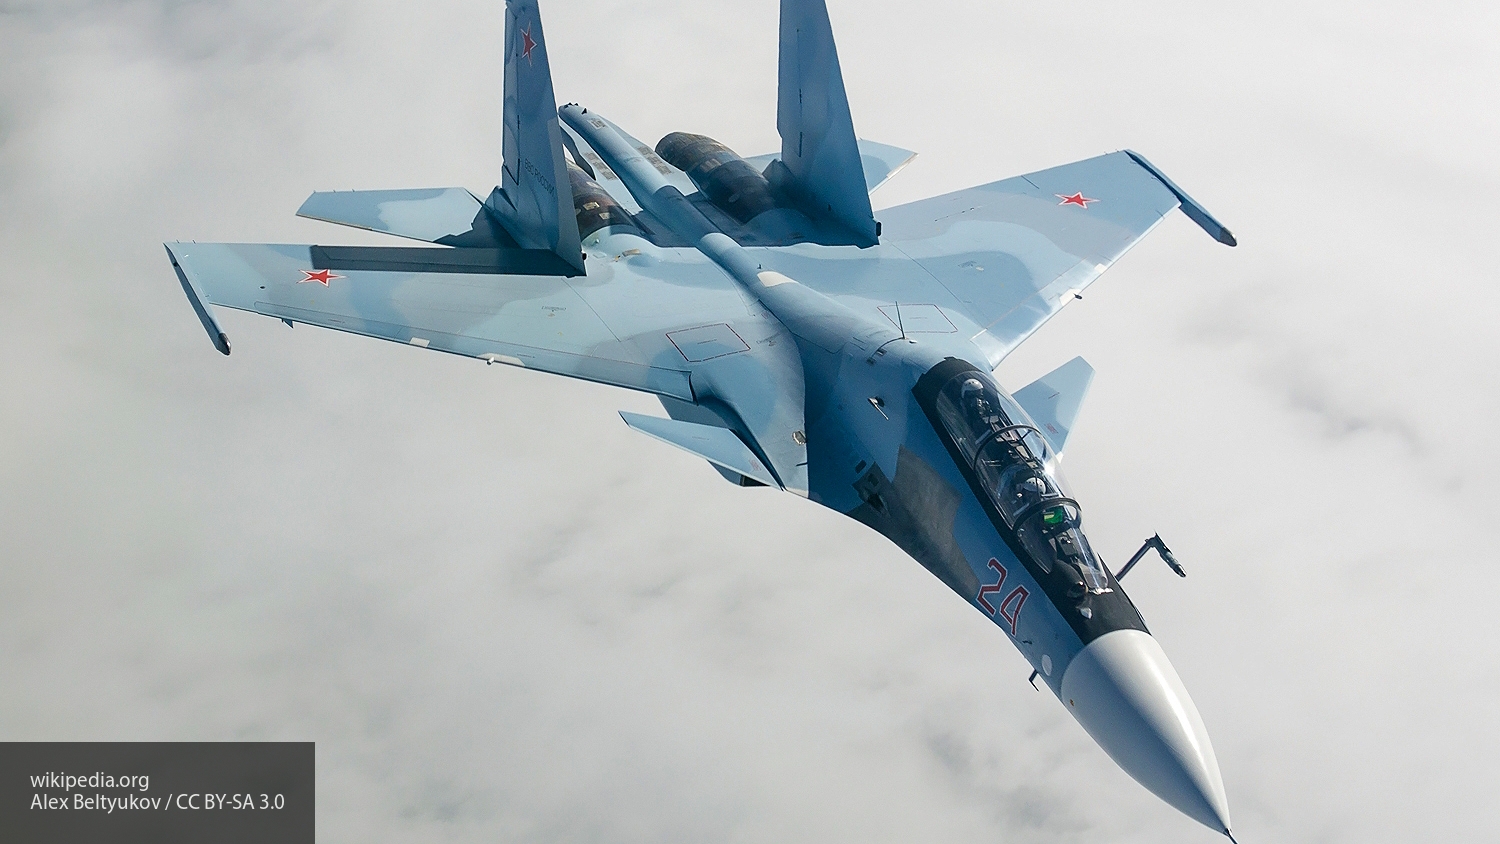 Военный эксперт Кнутов назвал Топ-5 выдающихся истребителей России